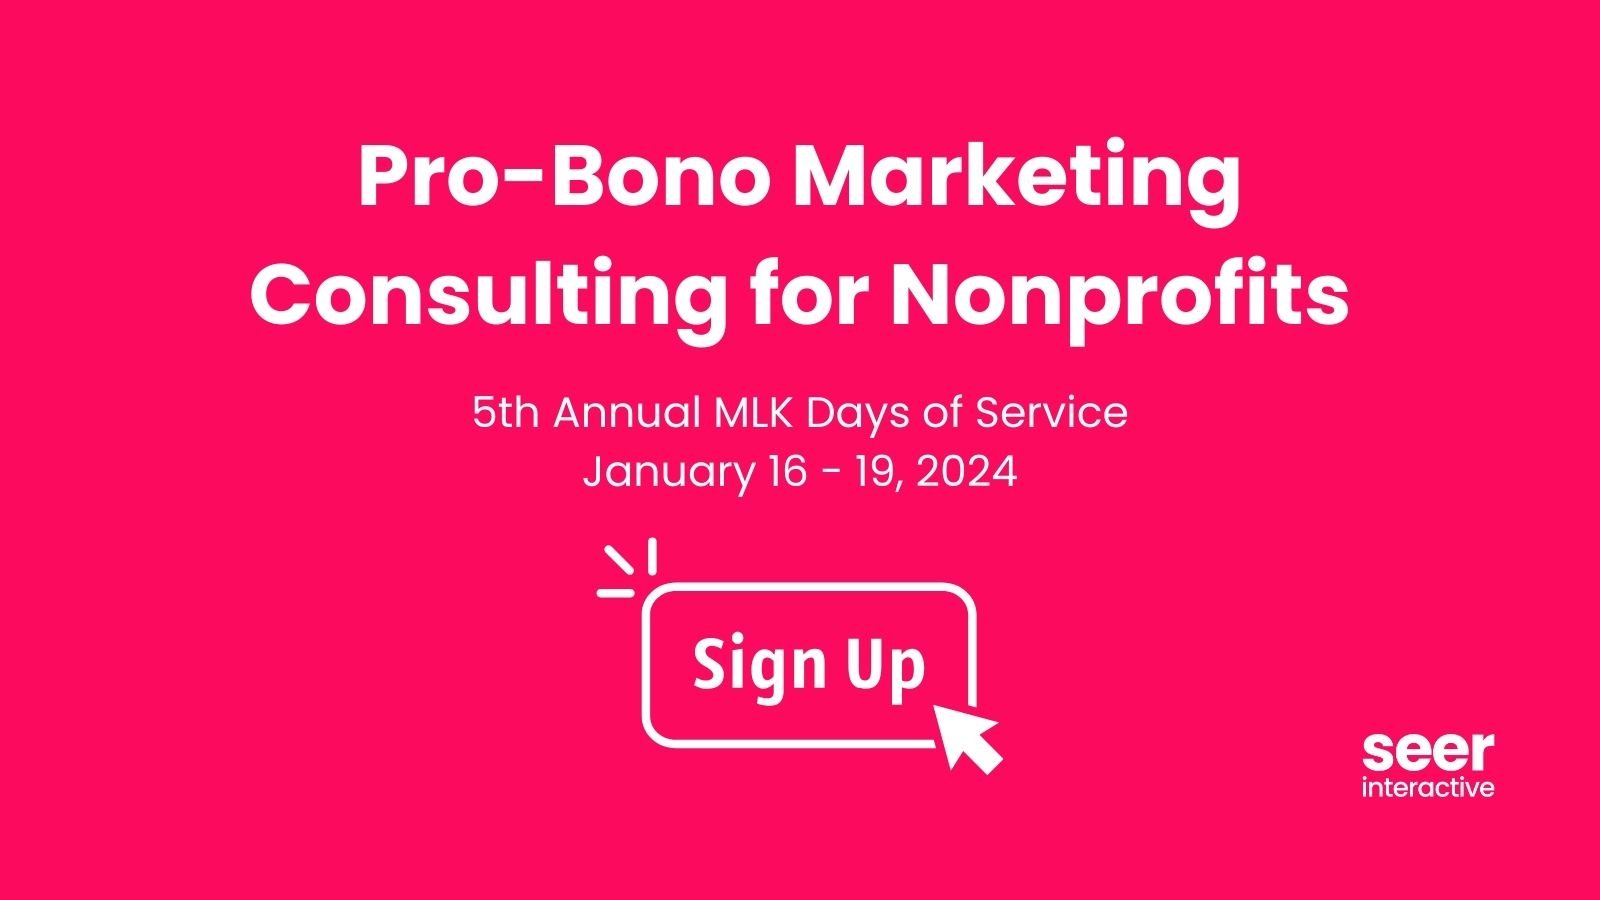 5th Annual Pro Bono Marketing Consulting for Nonprofits